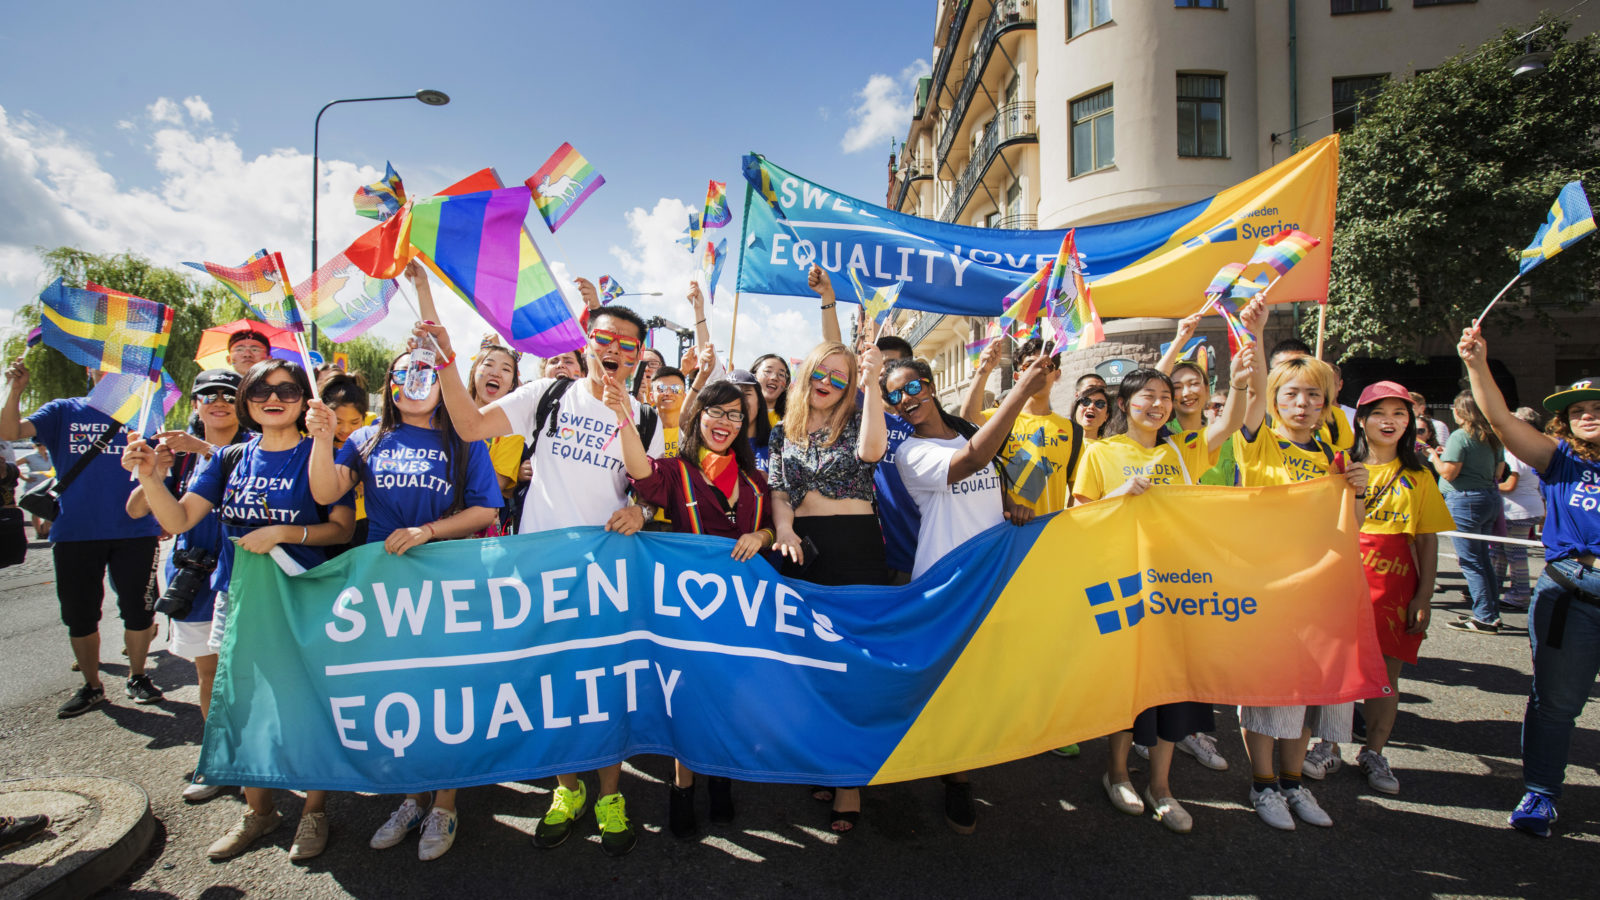 Sweden loves equality